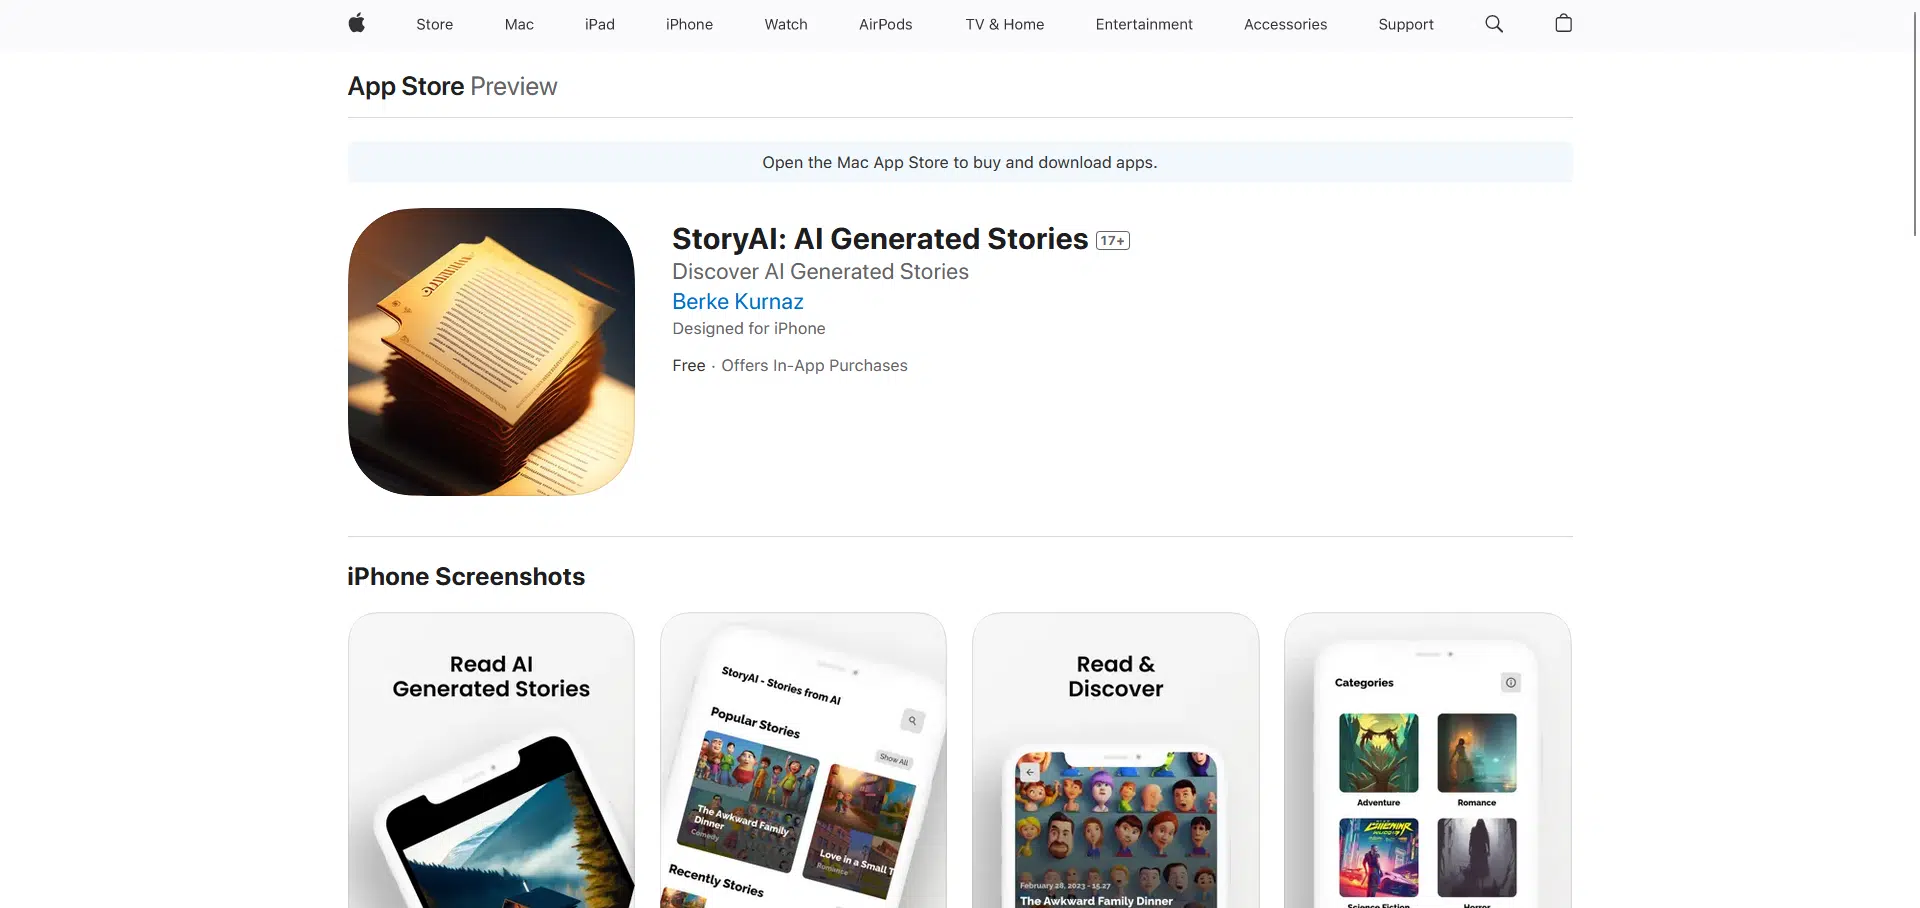 StoryAIwebsite picture